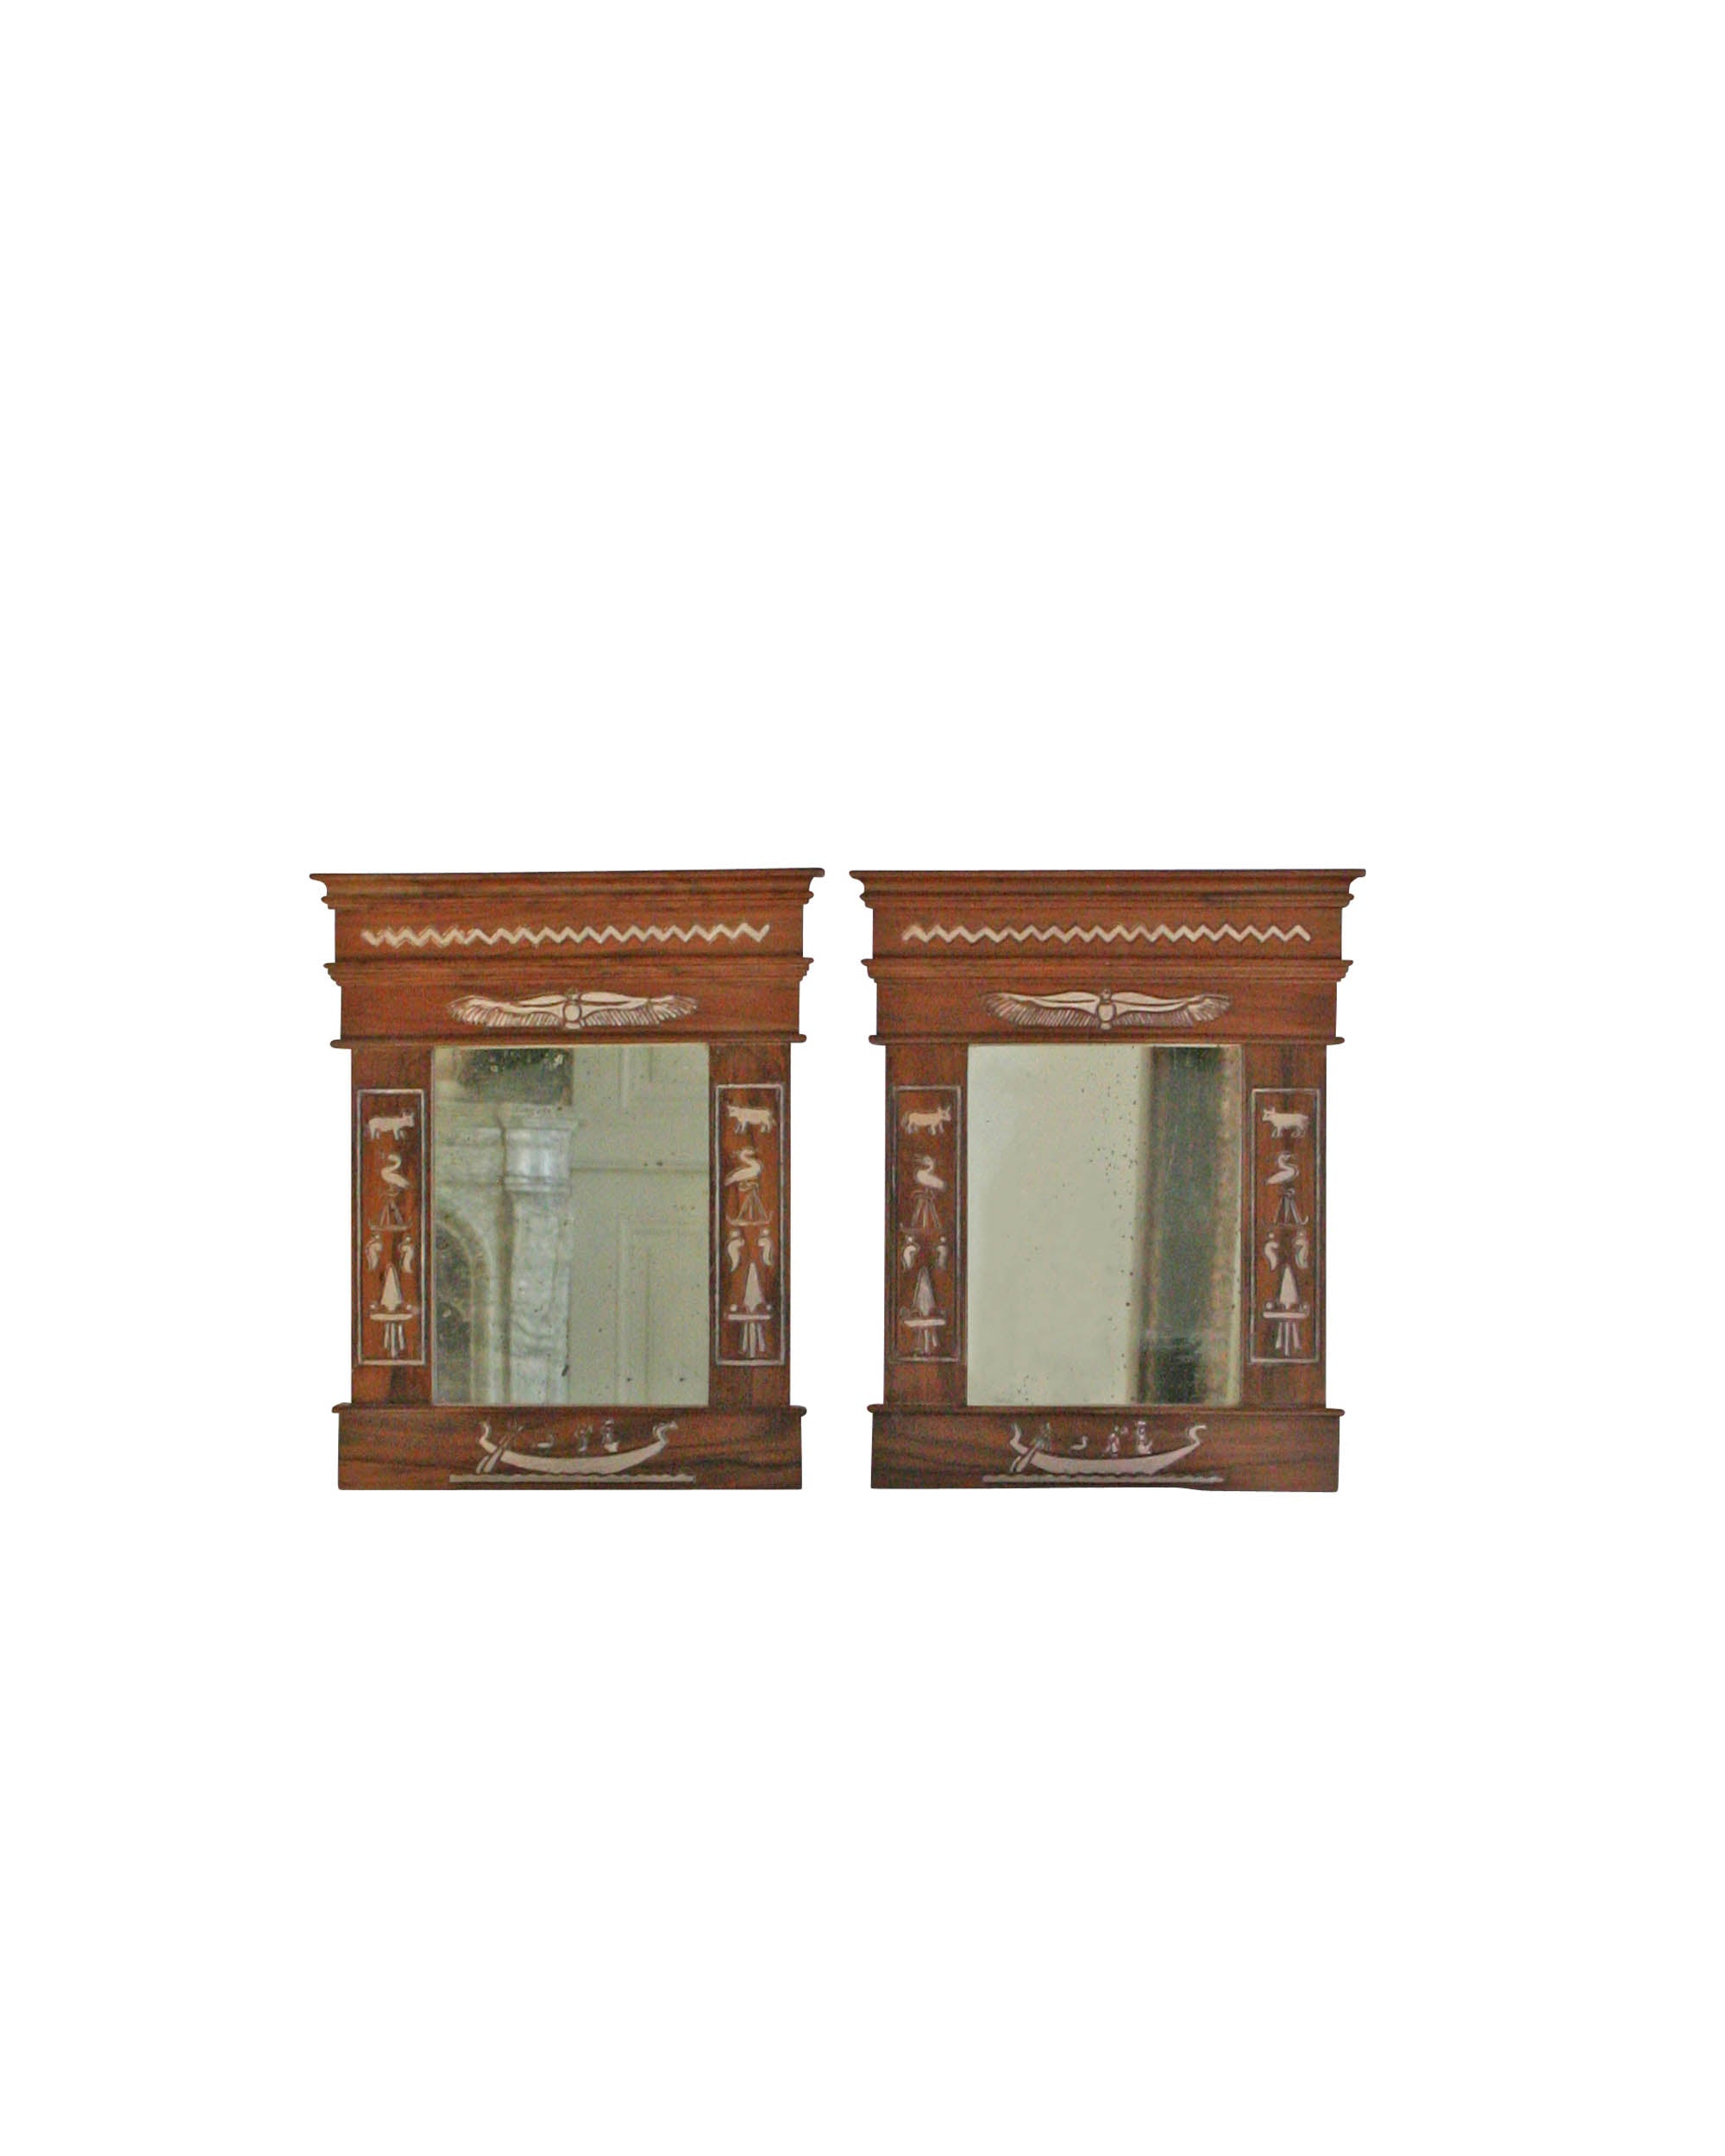 Pareja de espejos con marco de madera tallada con representaciones egipcias (Egiptomanía)